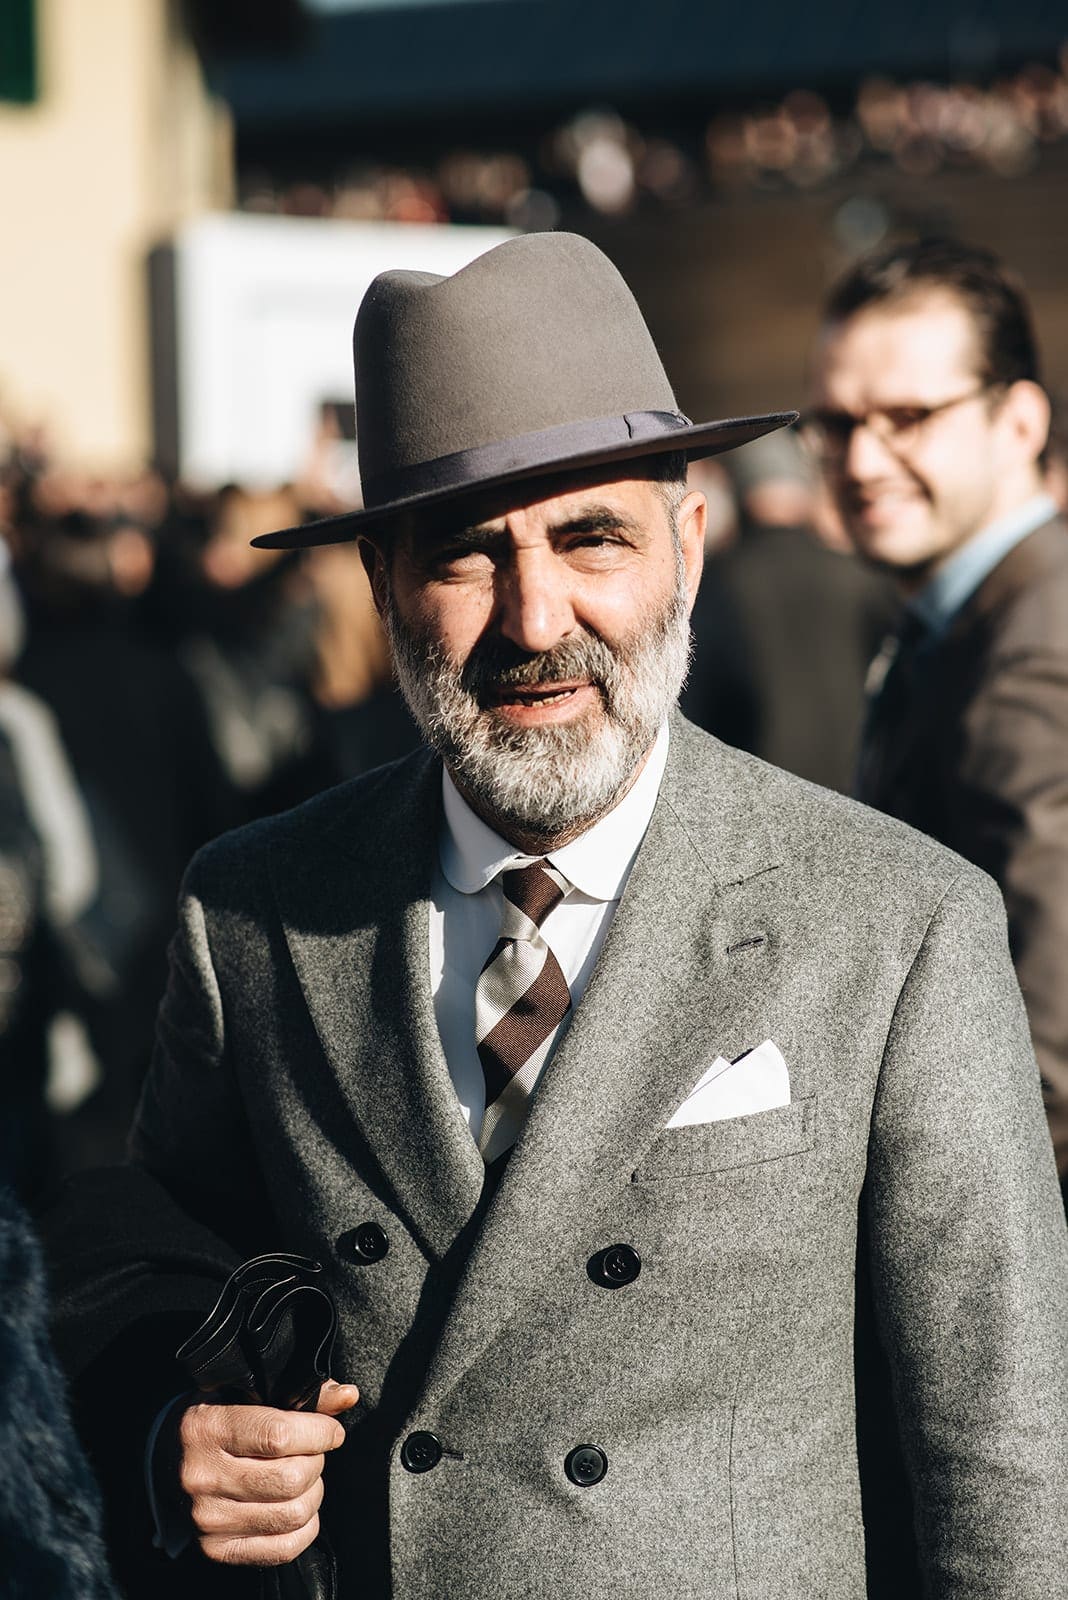 pitti uomo, Pitti Uomo 97: de meest stijlvolle outfits en de trends voor 2020